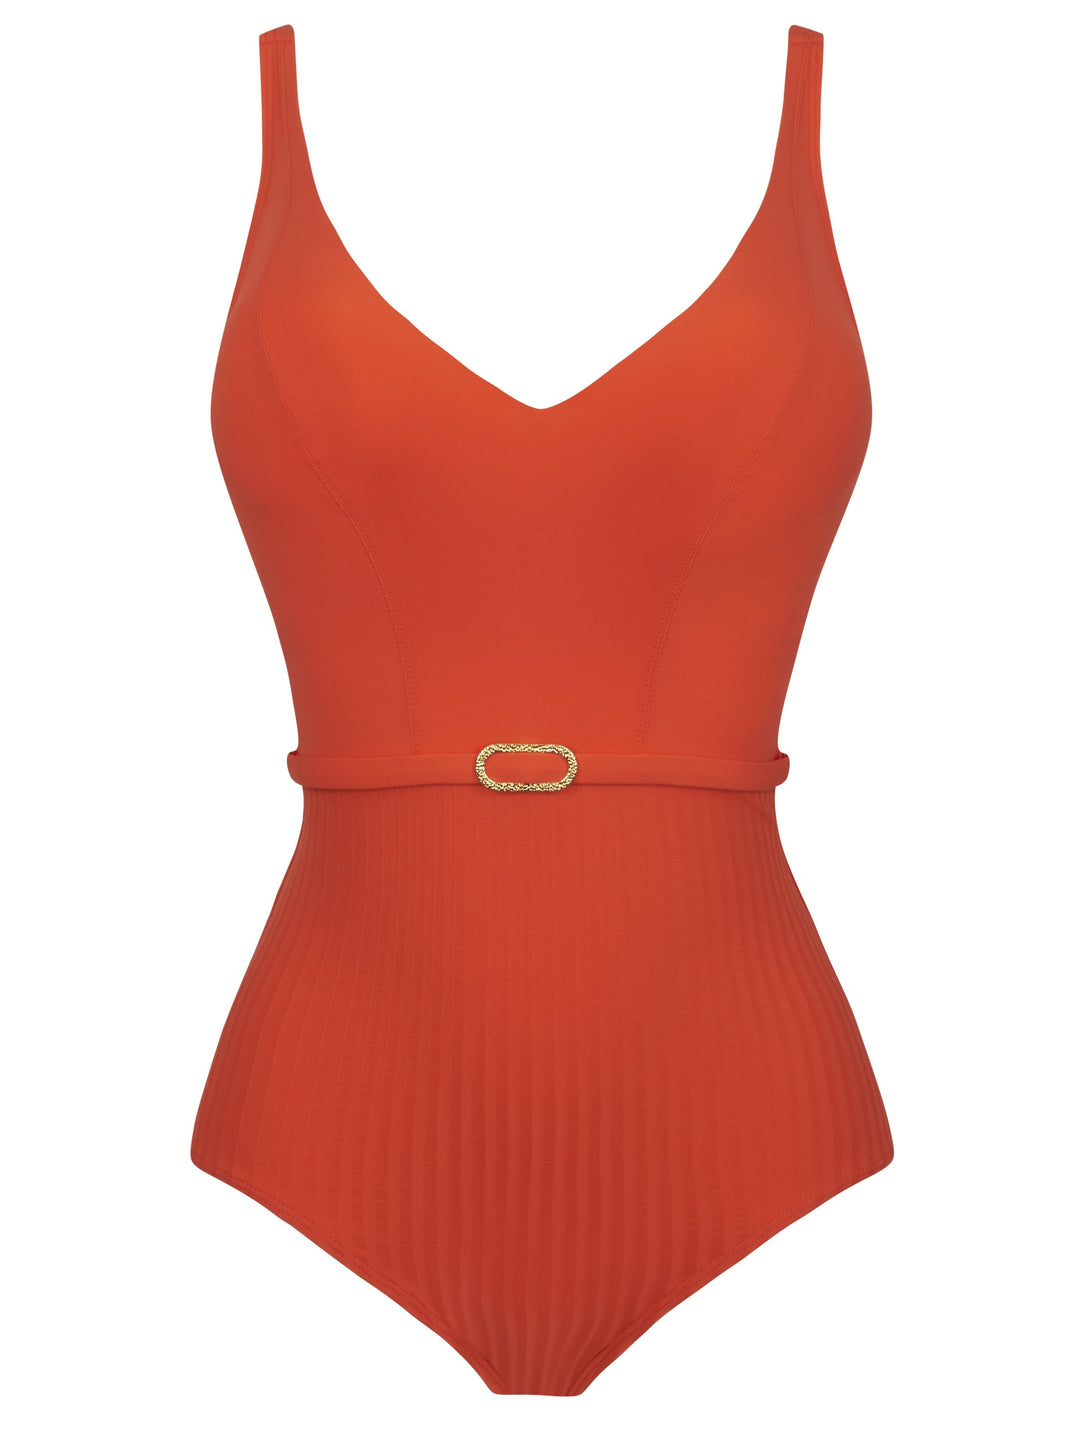 Empreinte - Iconic Underwire V-Neck Swimsuit Tangerine Plunge Swimsuit Empreinte Swimwear 